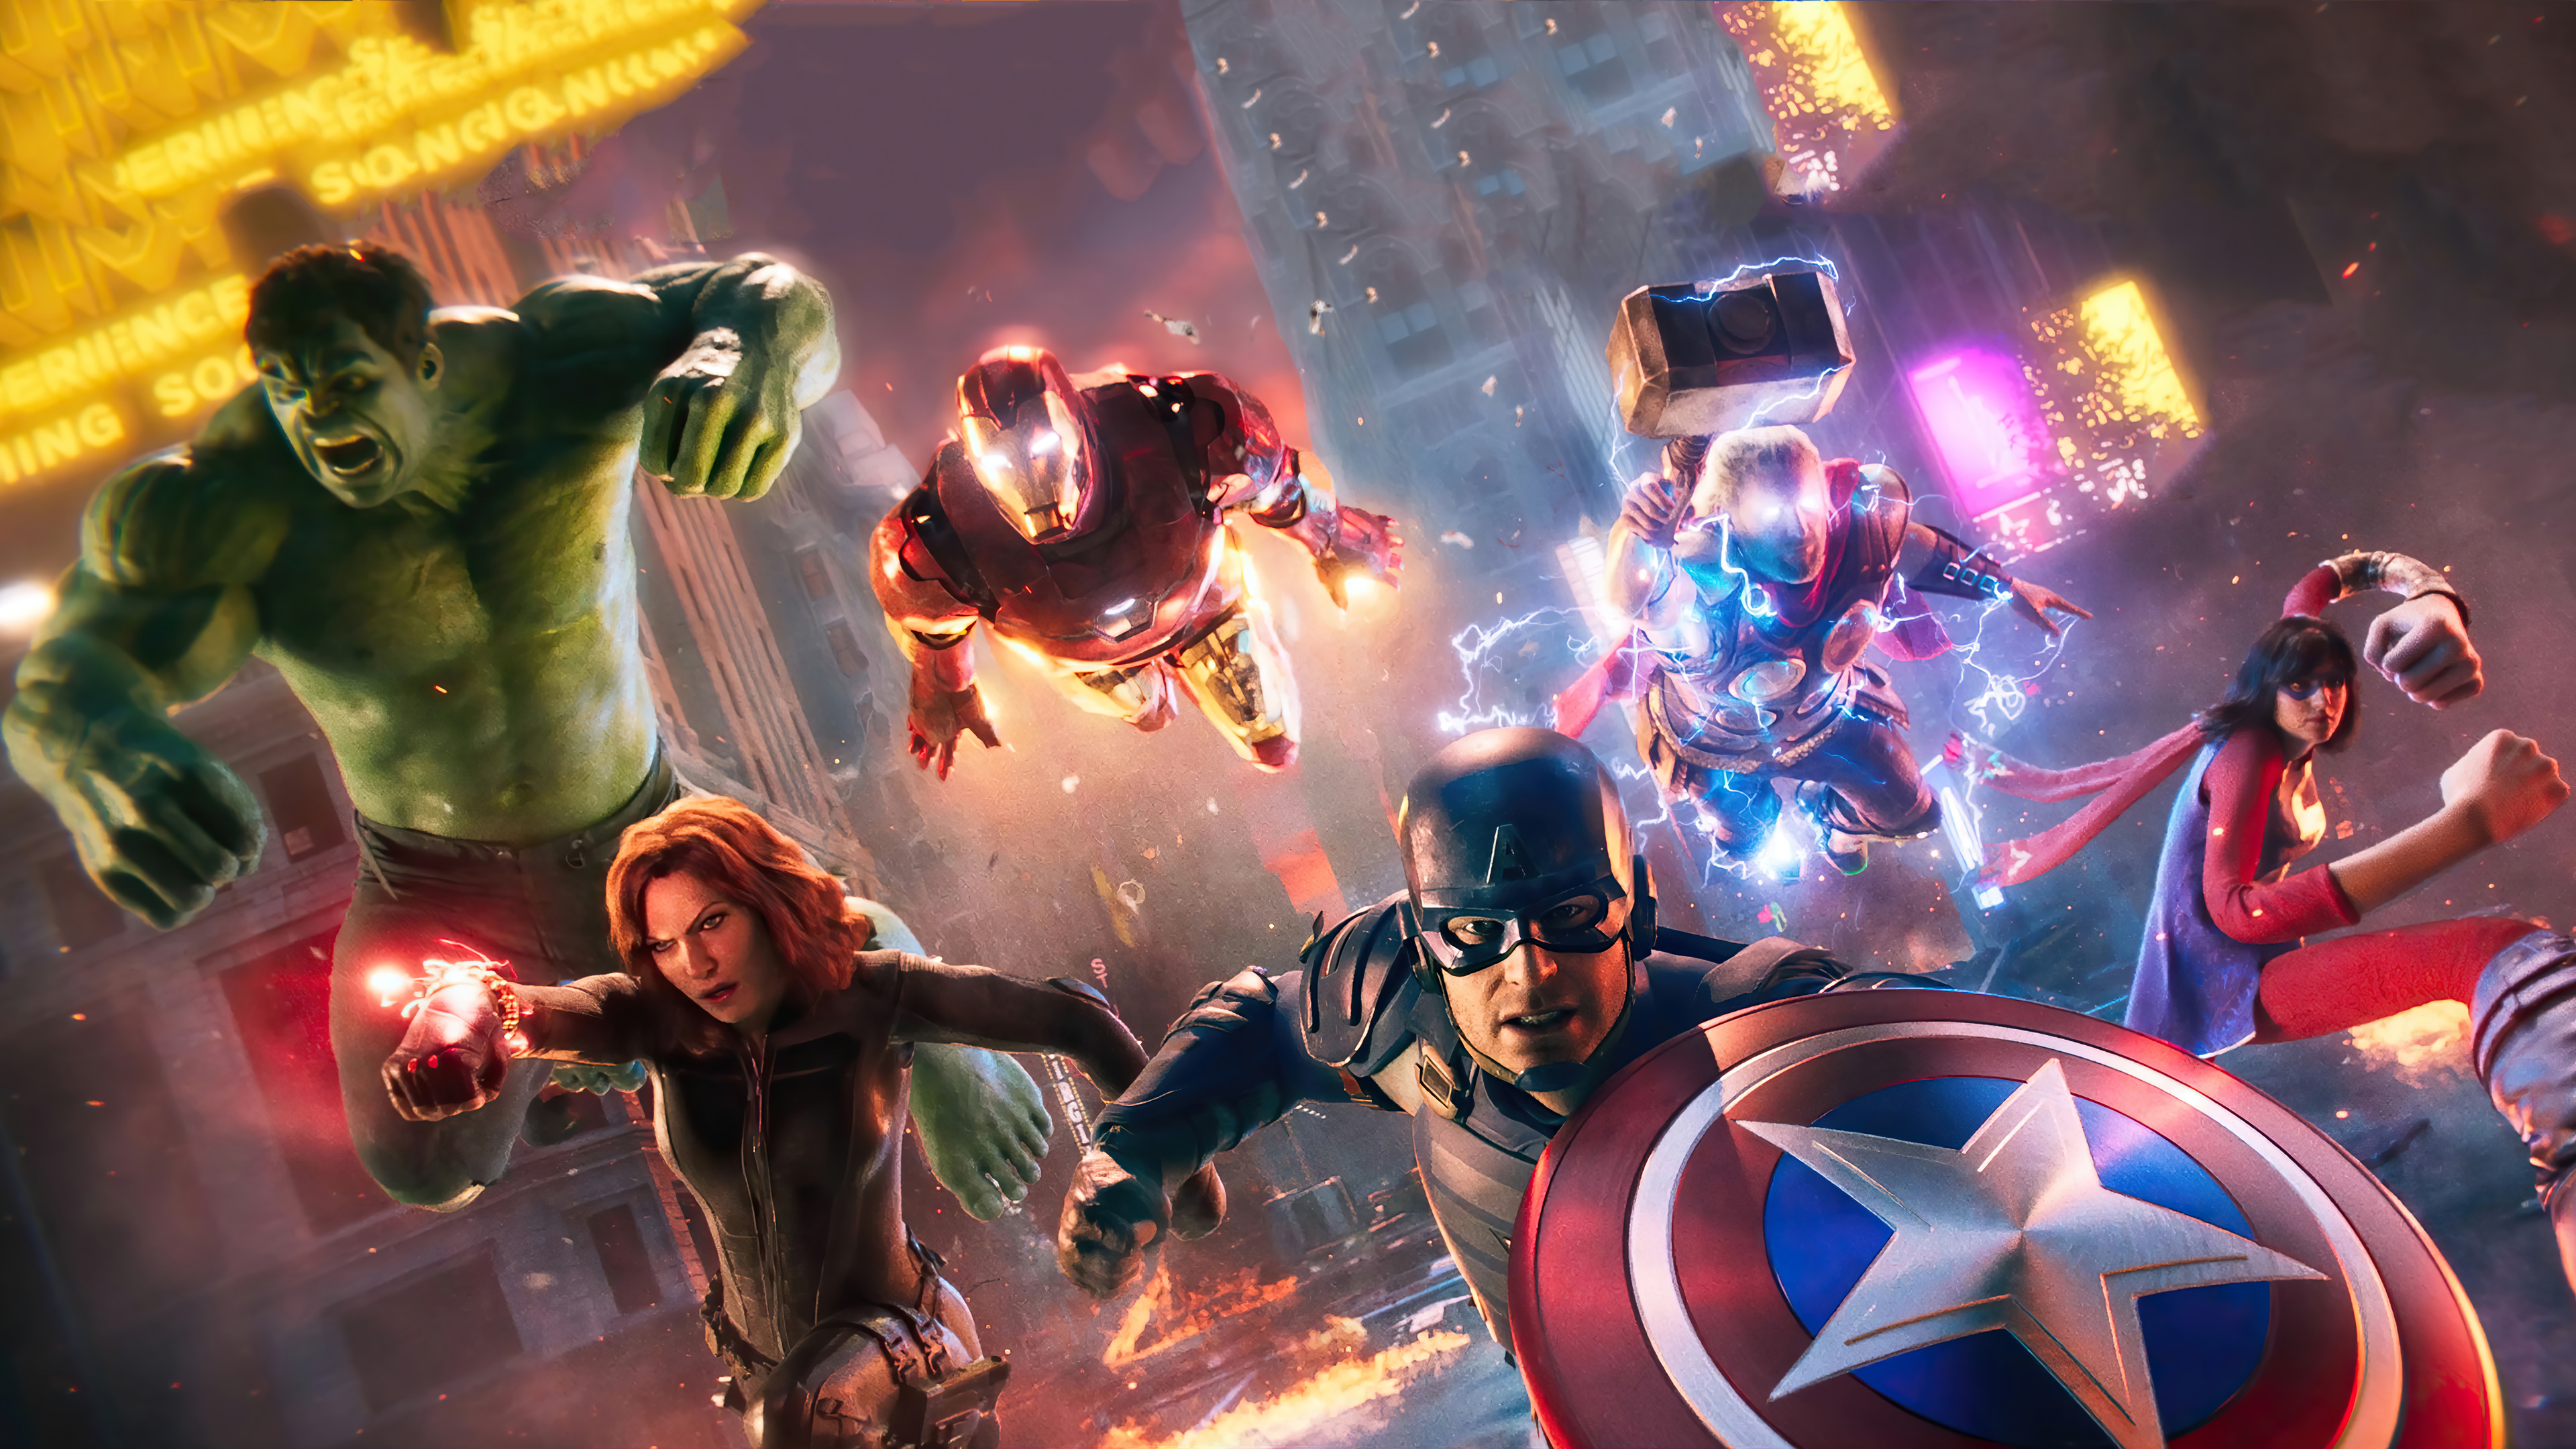 Avengers là tập hợp các anh hùng mạnh mẽ nhất trên trái đất trong vũ trụ Marvel. Với hình ảnh liên quan đến từ khóa này, bạn sẽ được đưa vào cuộc chiến bảo vệ hành tinh, cùng đồng đội chiến đấu và chiến thắng.